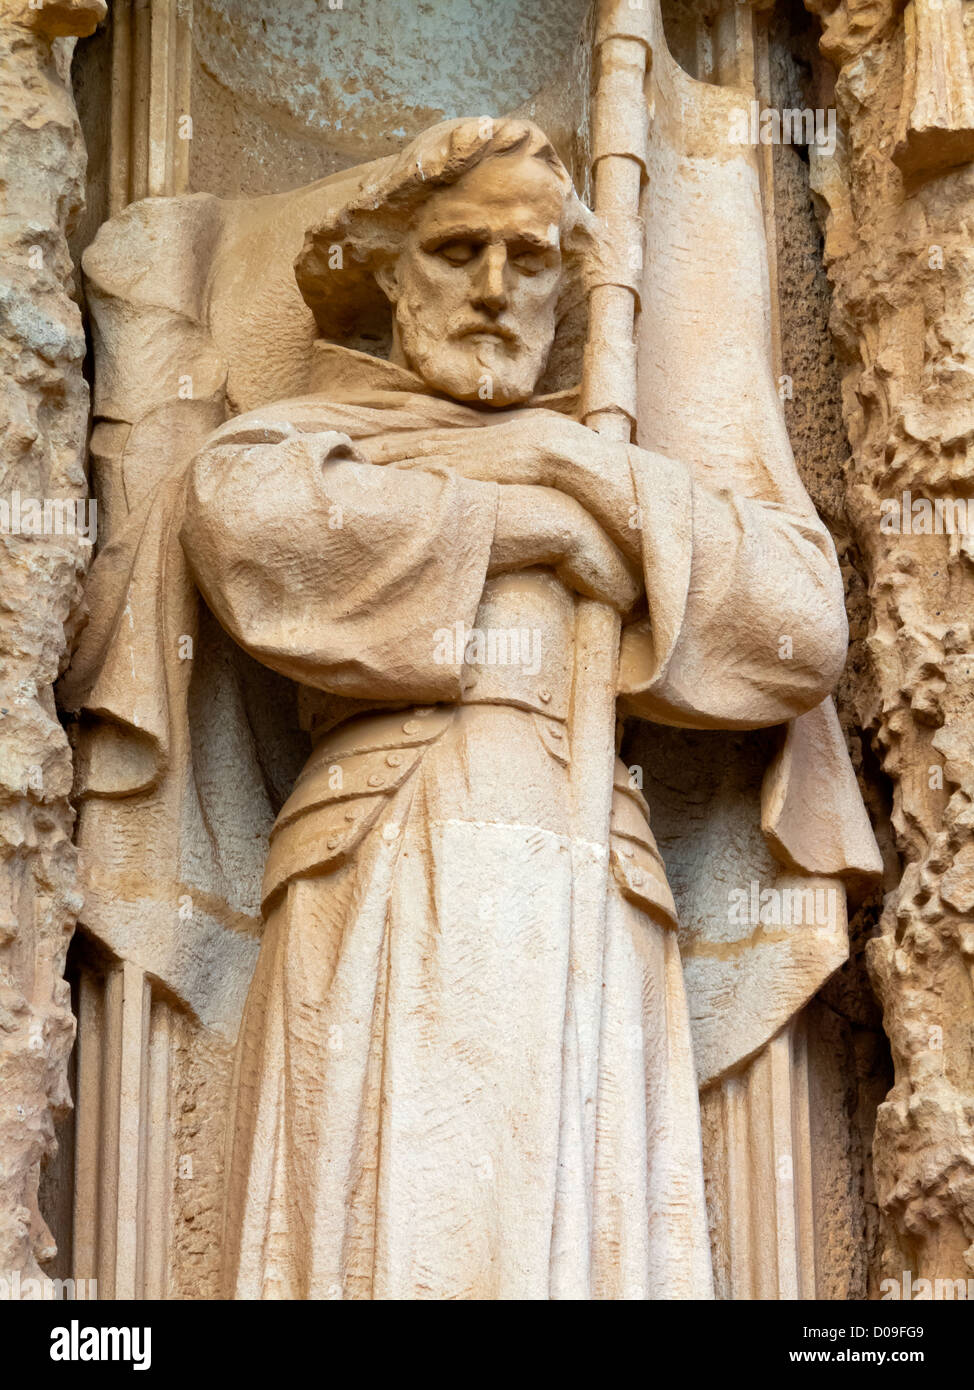 Carved male figure in stone outside Tibidabo basilica church Temple Expiatori del Sagrat Cor Barcelona Catalonia Spain Stock Photo